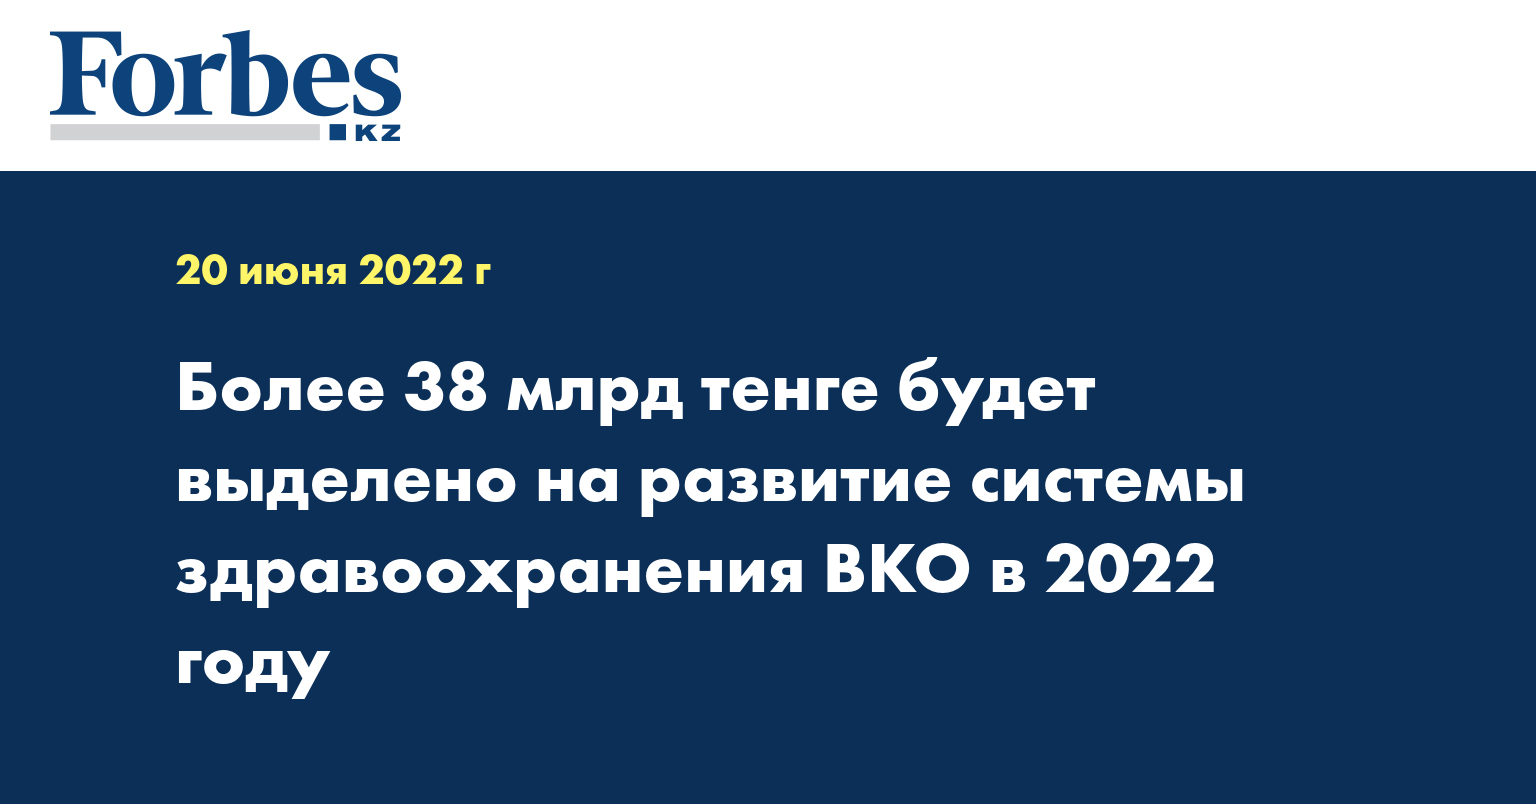 Более 38 млрд тенге будет выделено на развитие системы здравоохранения ВКО в 2022 году